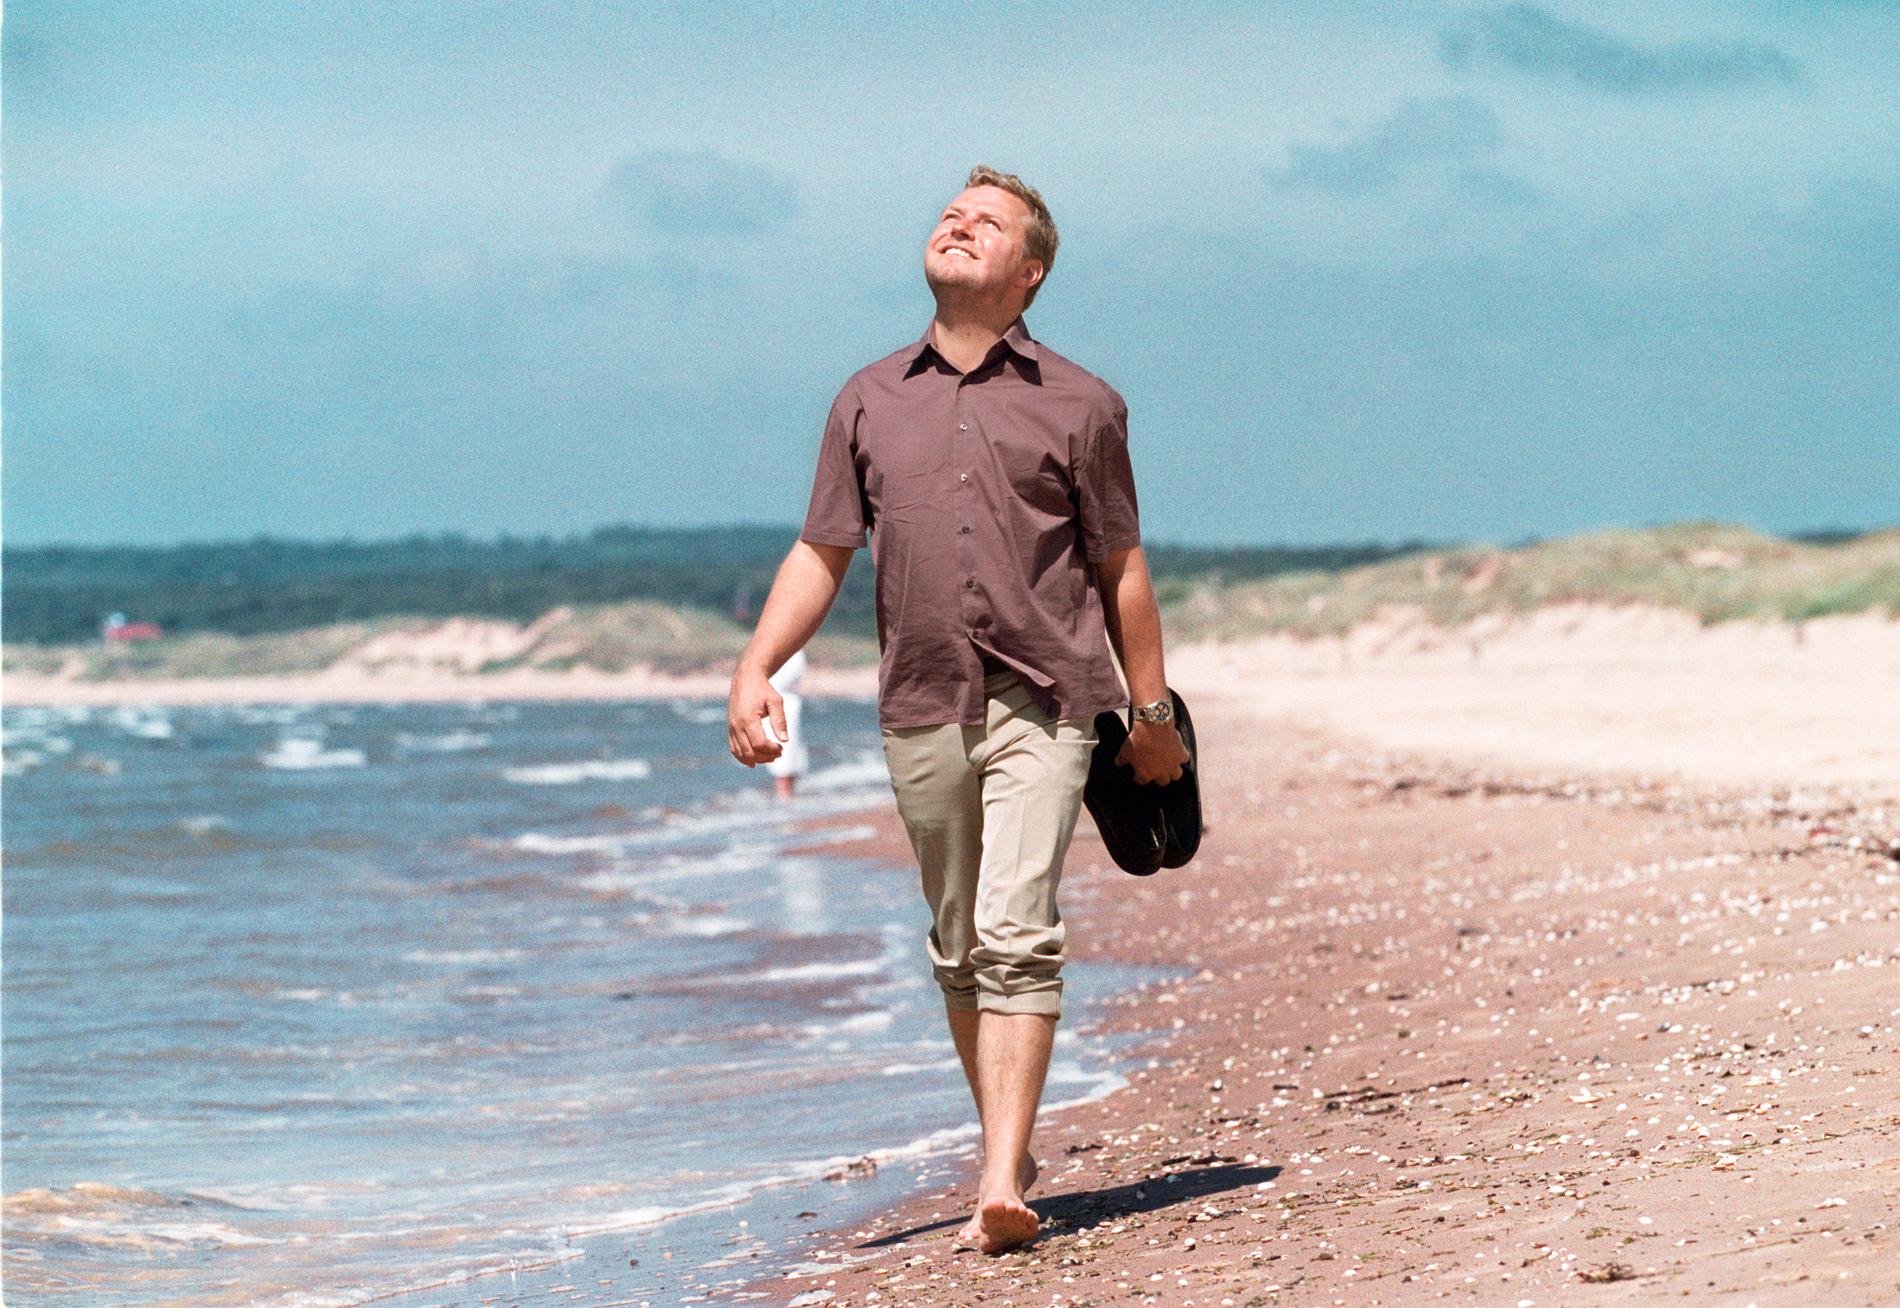 Johan Staël von Holstein, grundare av Medialab, på en strand 1999.